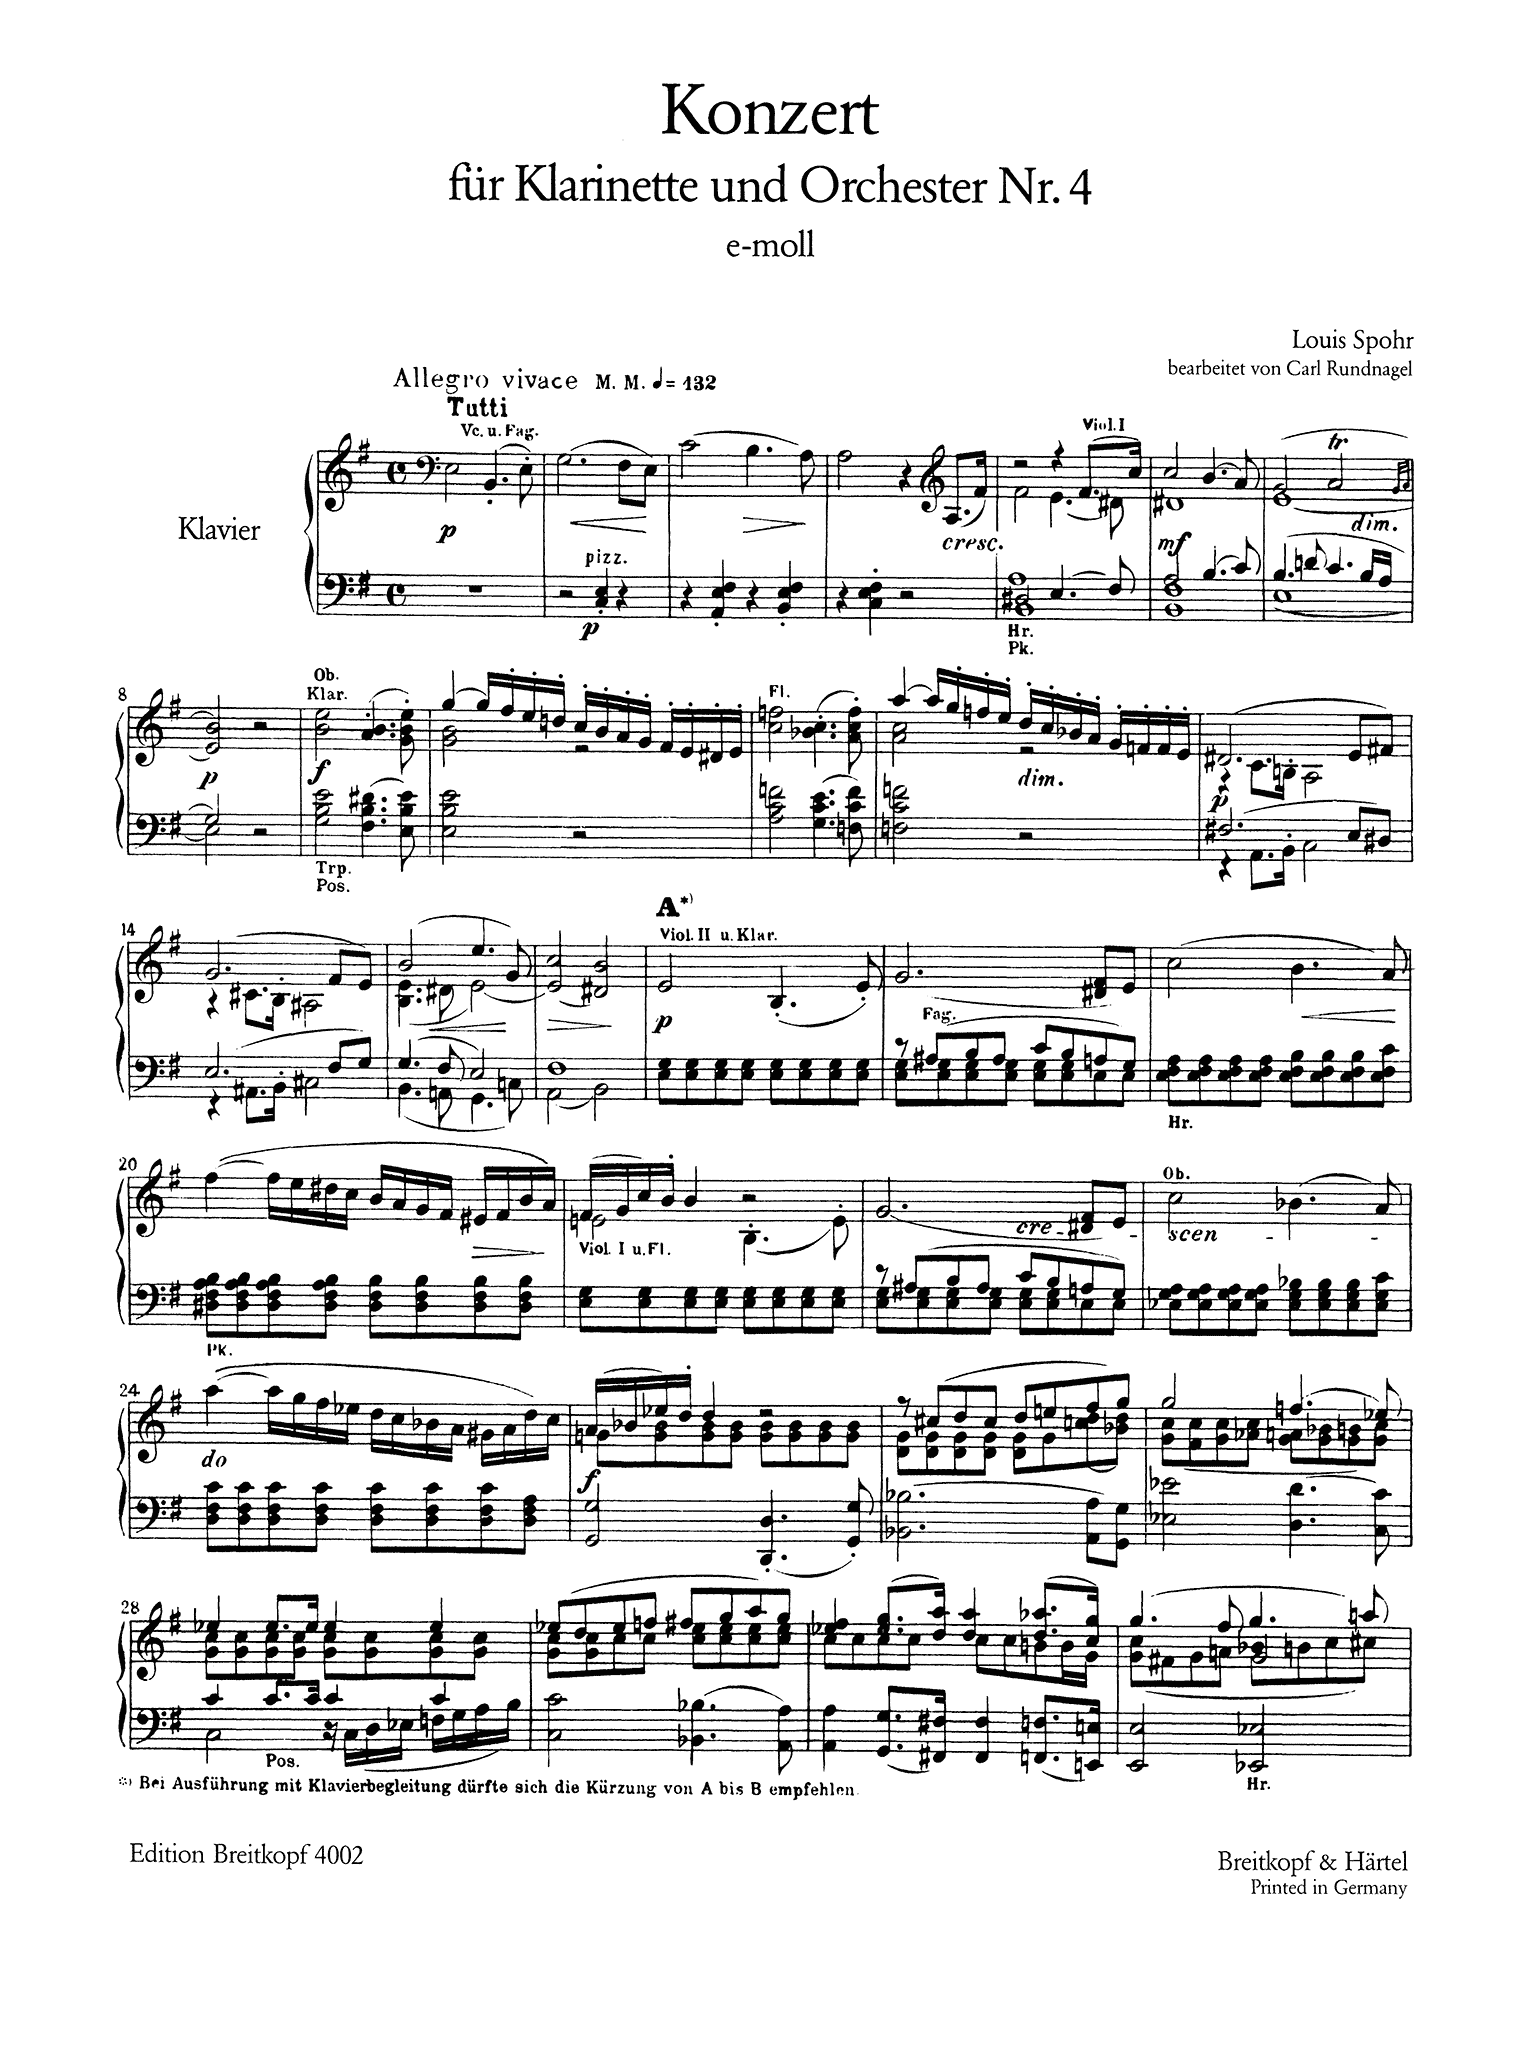 Clarinet Concerto No. 4 in E Minor, WoO 20 - Movement 1